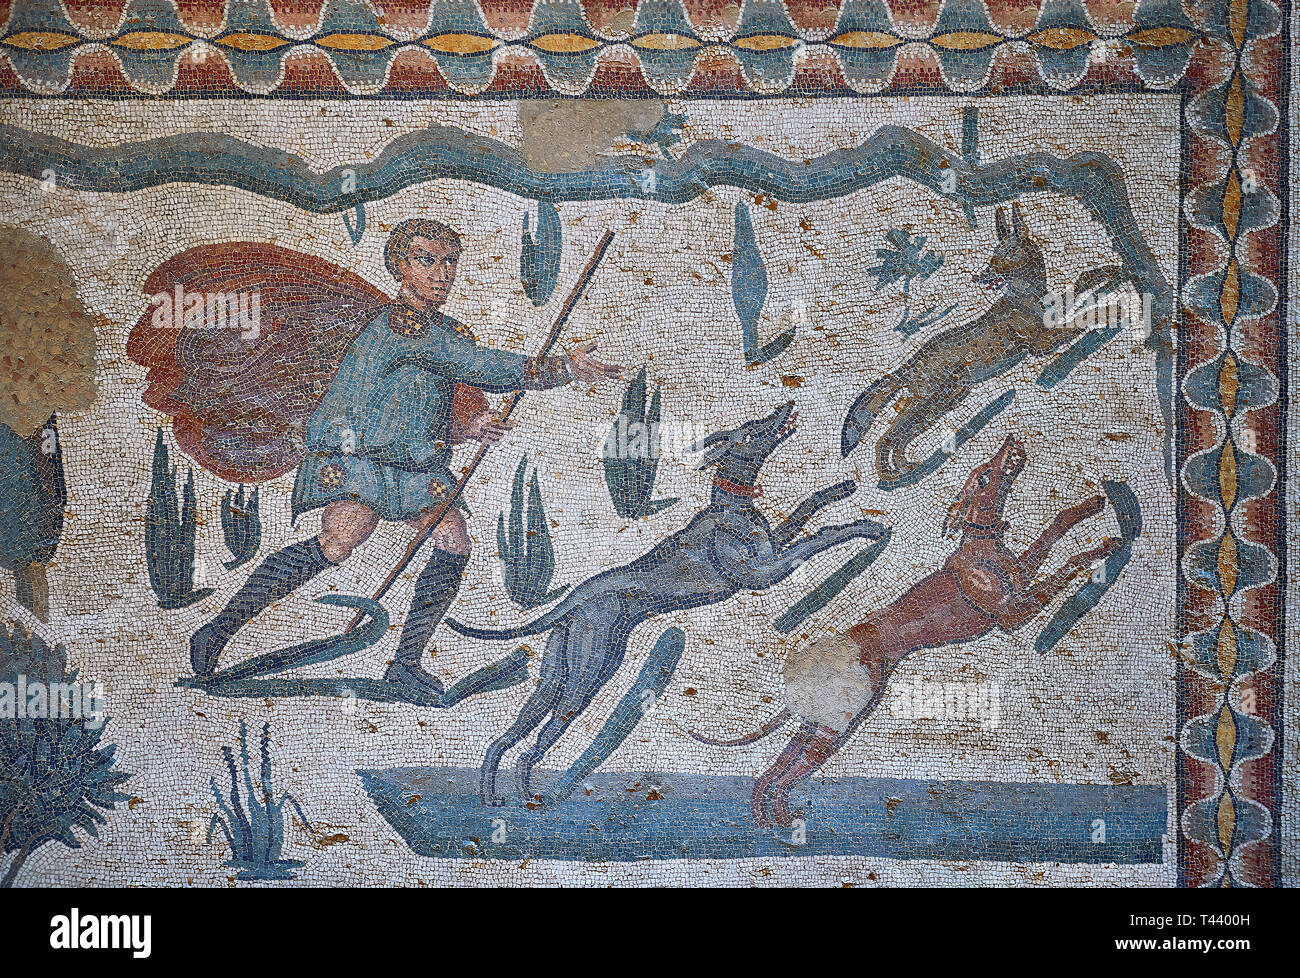 Römische mosaike -Fotos und -Bildmaterial in hoher Auflösung – Alamy